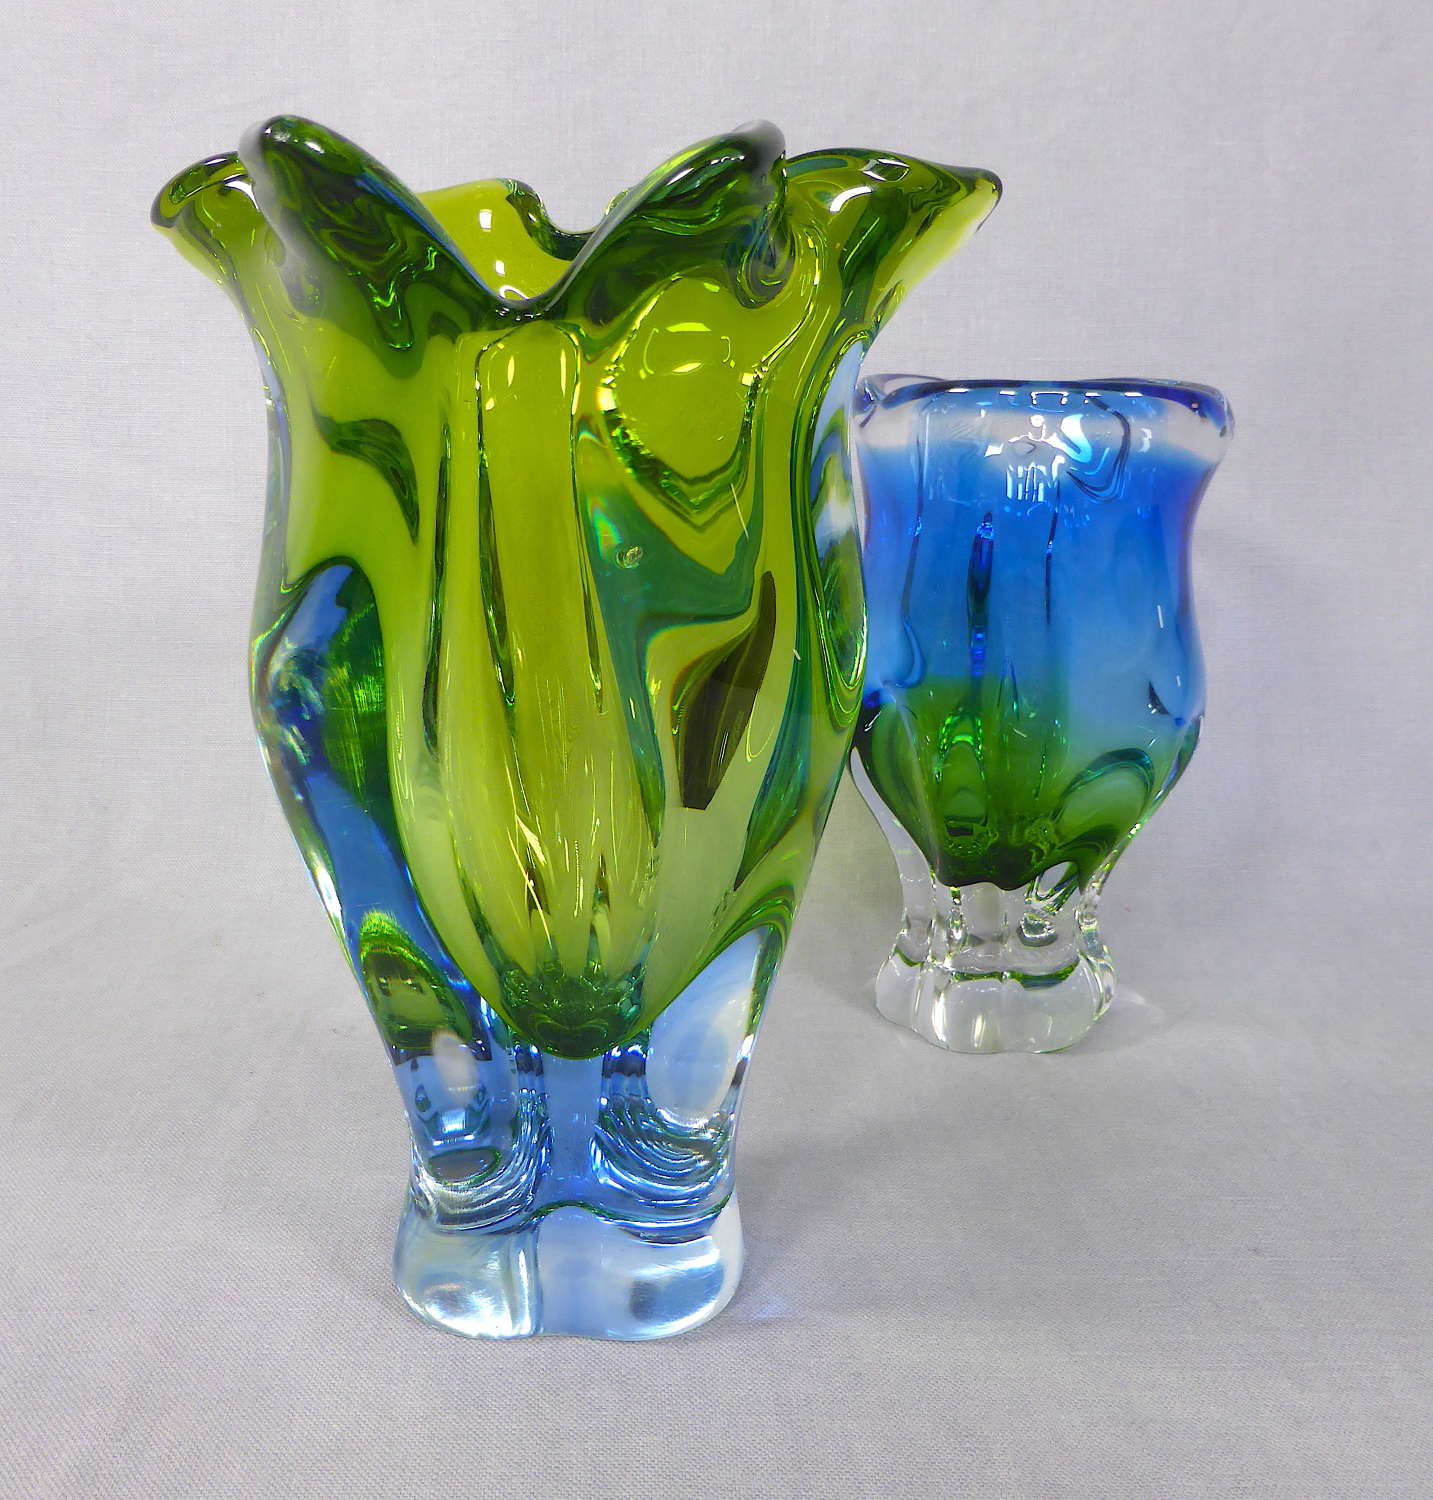 Czech Chřibská art glass vase by Josef Hospodska